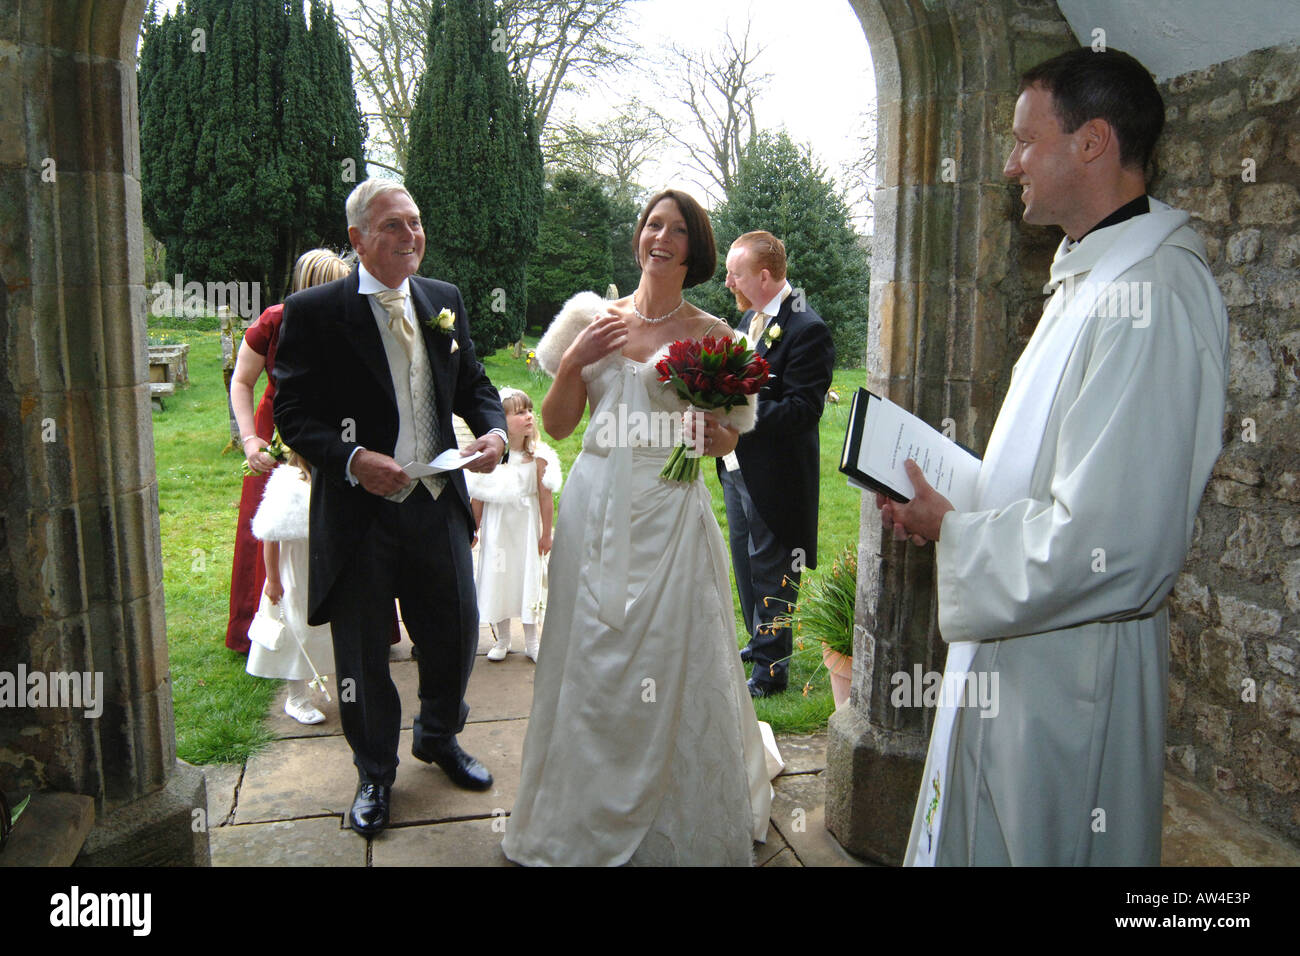 Eine Braut geht in die Kirche zu verheiratet, North Yorkshire Modell veröffentlicht Stockfoto